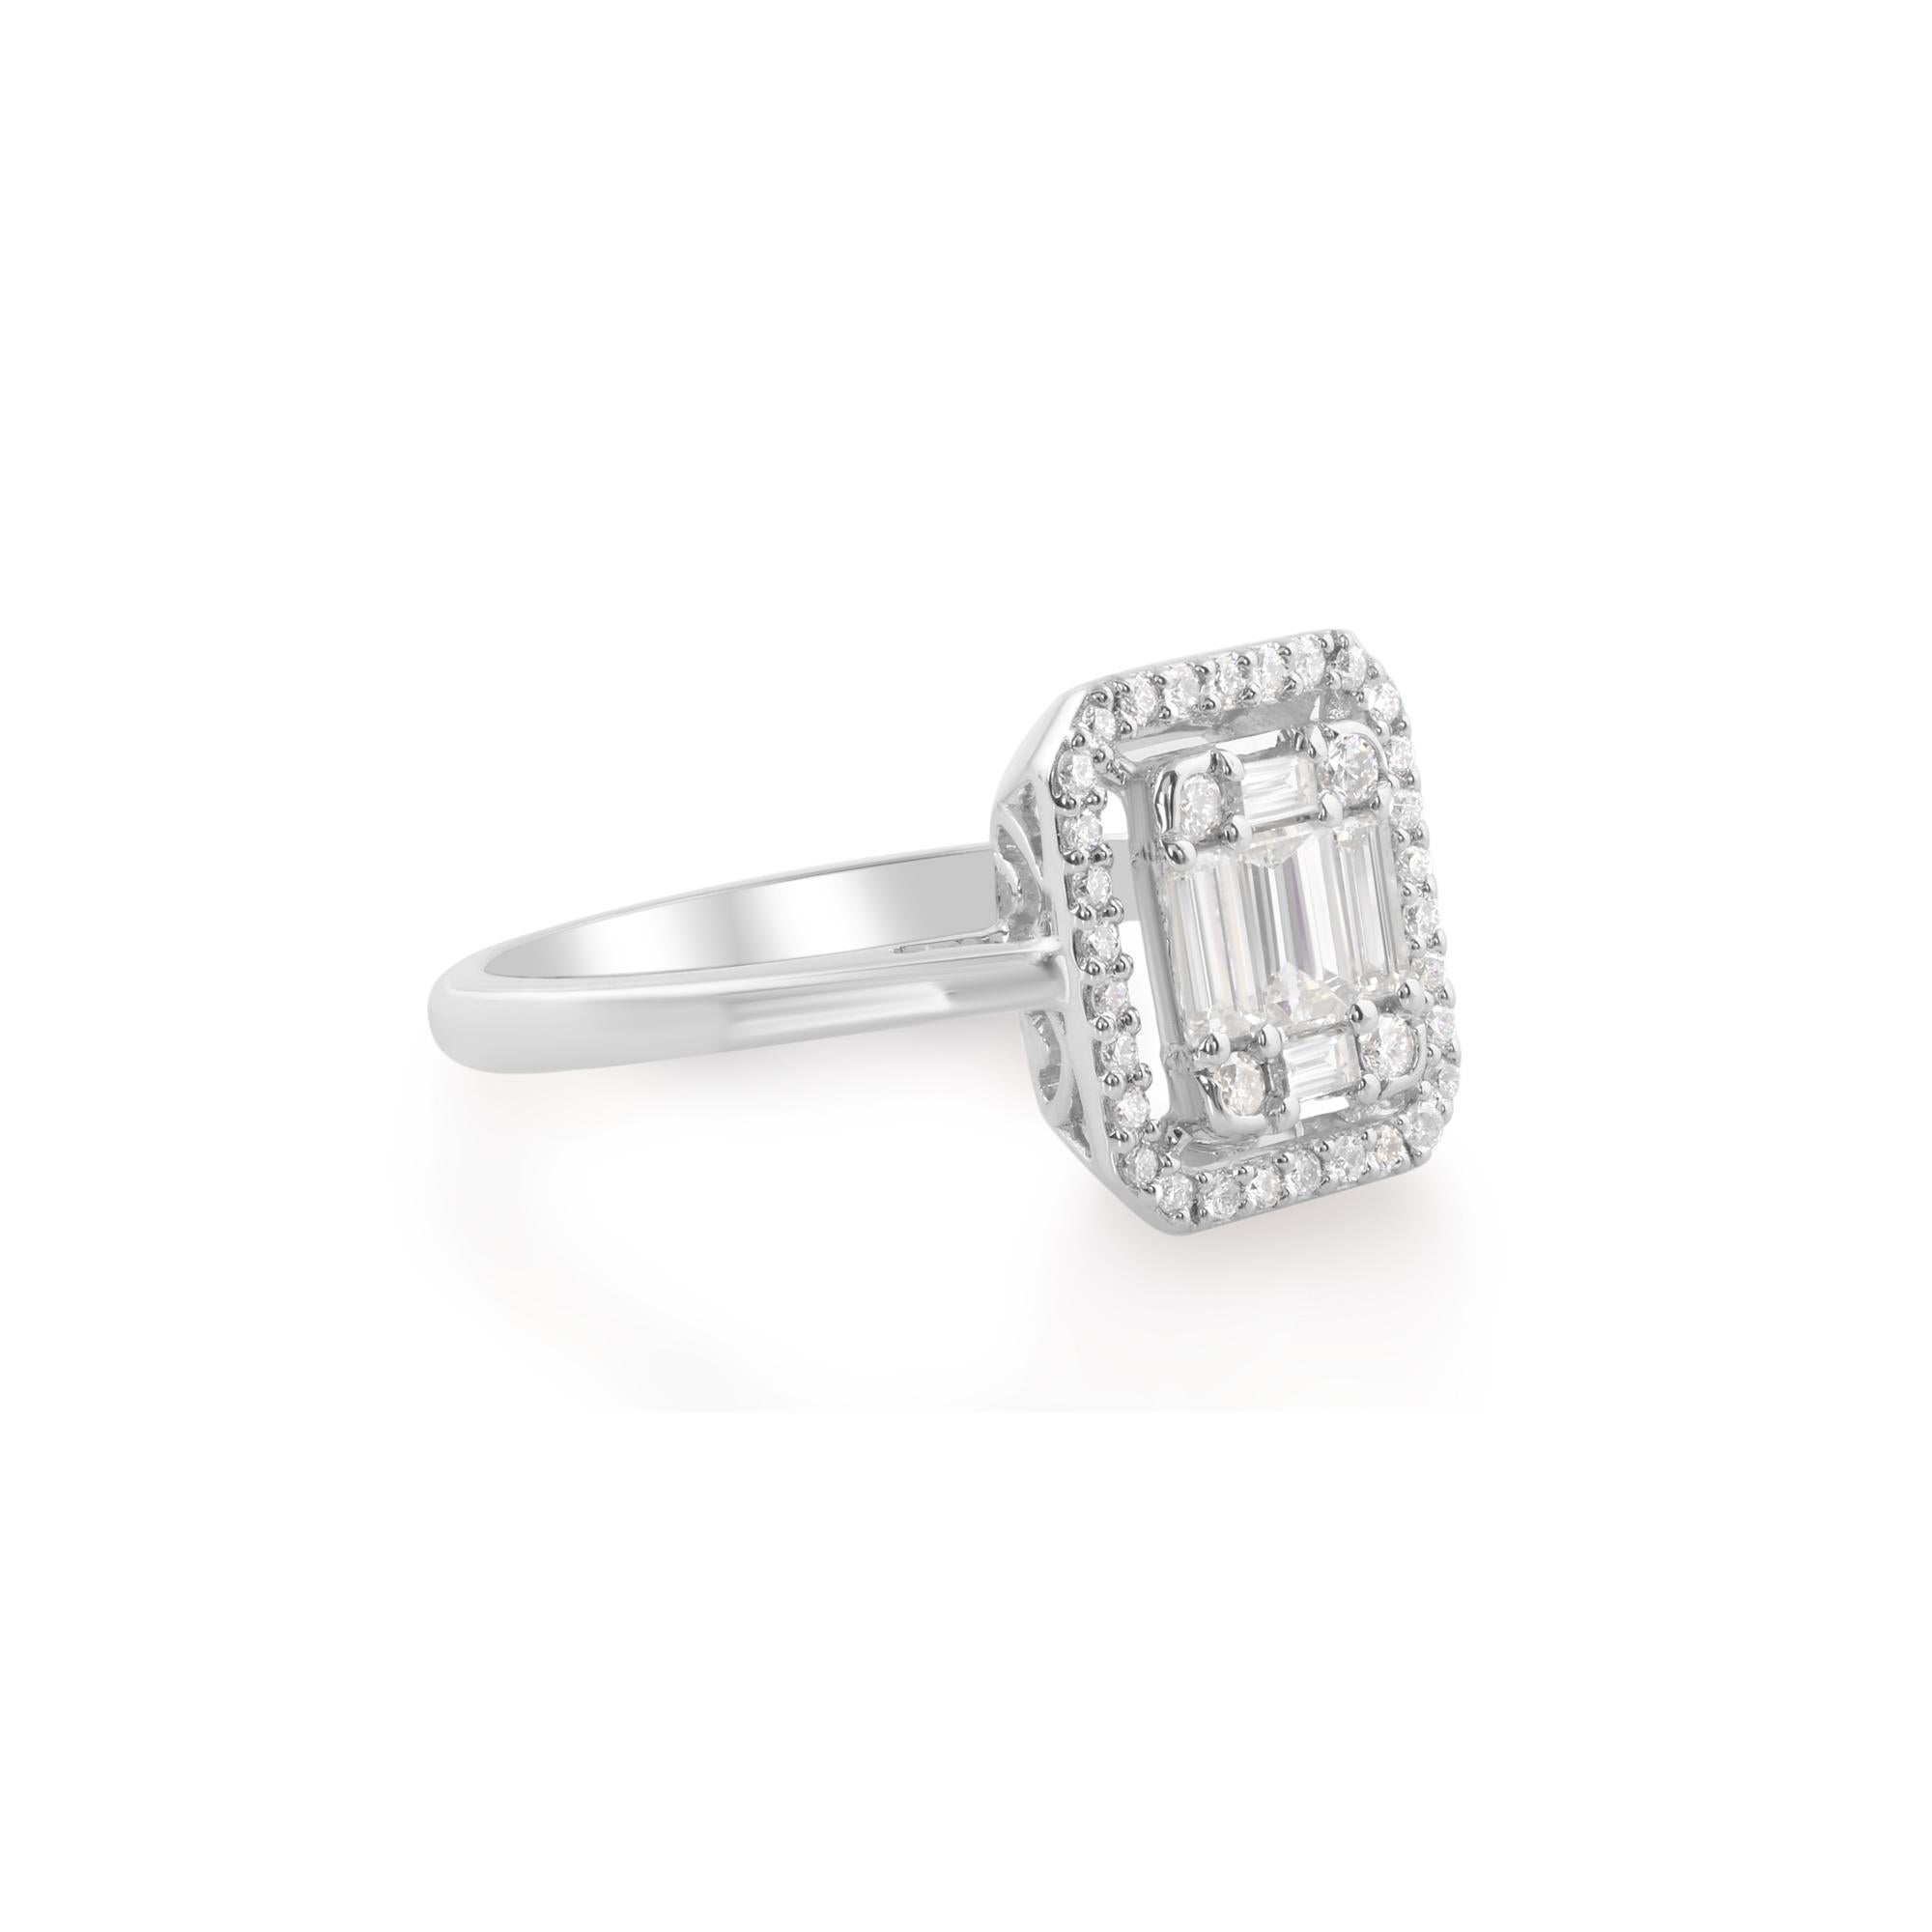 Der zentrale Baguette-Diamant ist der Inbegriff von Eleganz und strahlt mit seiner länglichen Form und außergewöhnlichen Klarheit Brillanz und Raffinesse aus. Seine faszinierende Schönheit wird durch die makellose Weißgoldfassung noch verstärkt, die